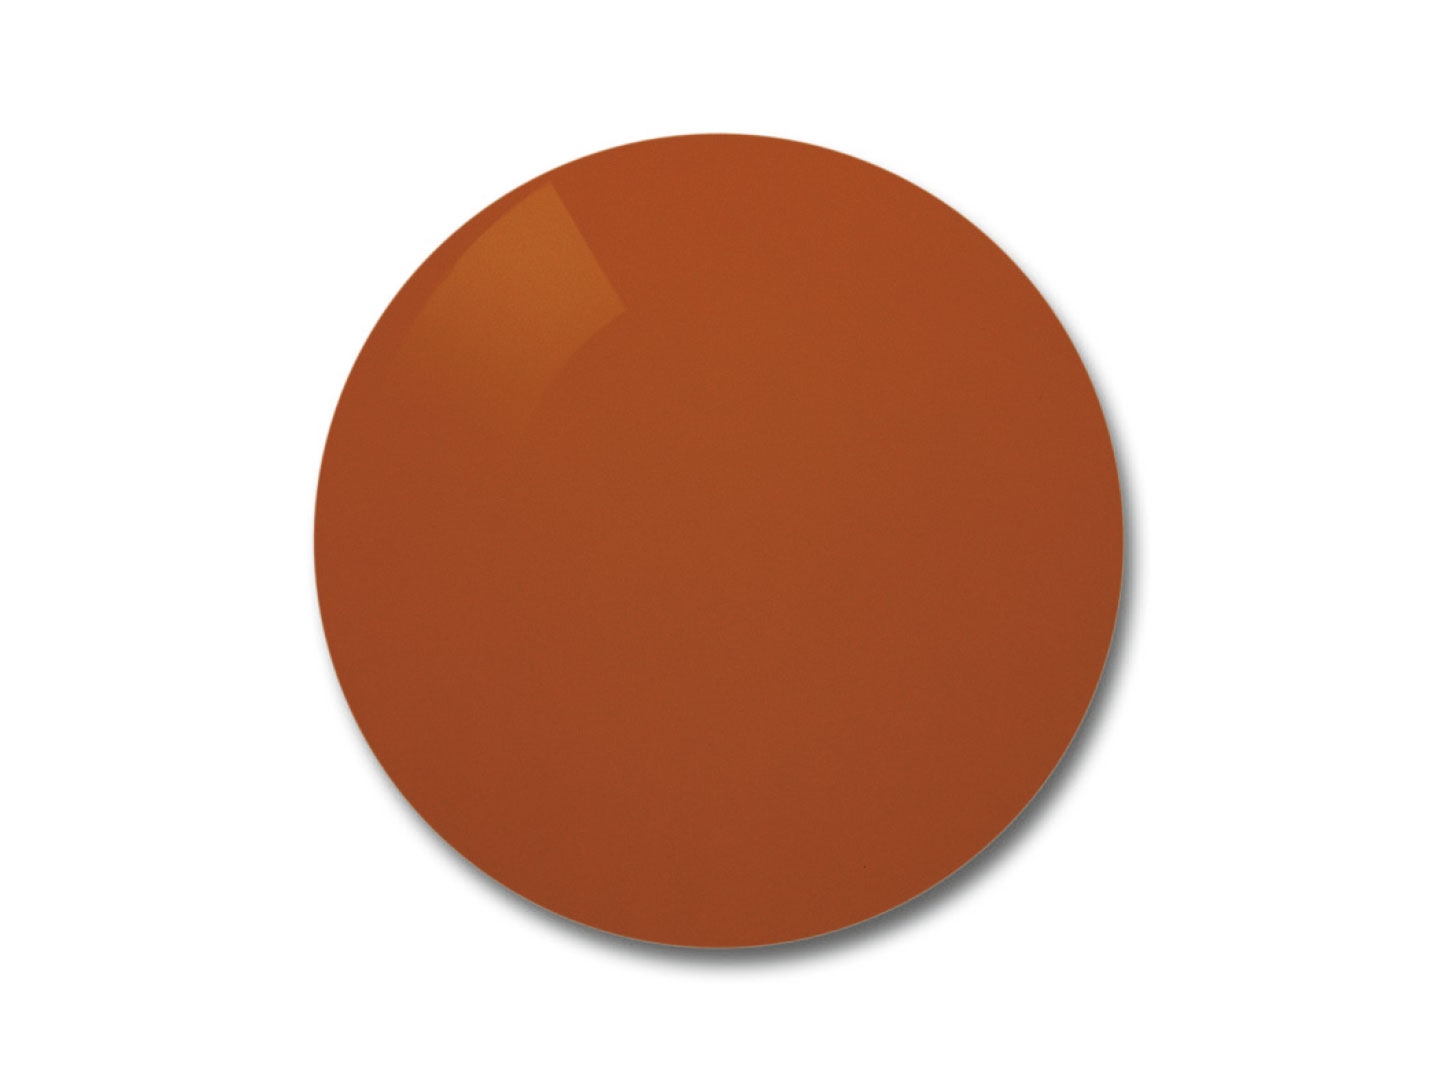 Зображення лінз ZEISS Skylet® Fun з оранжево-коричневим тонуванням